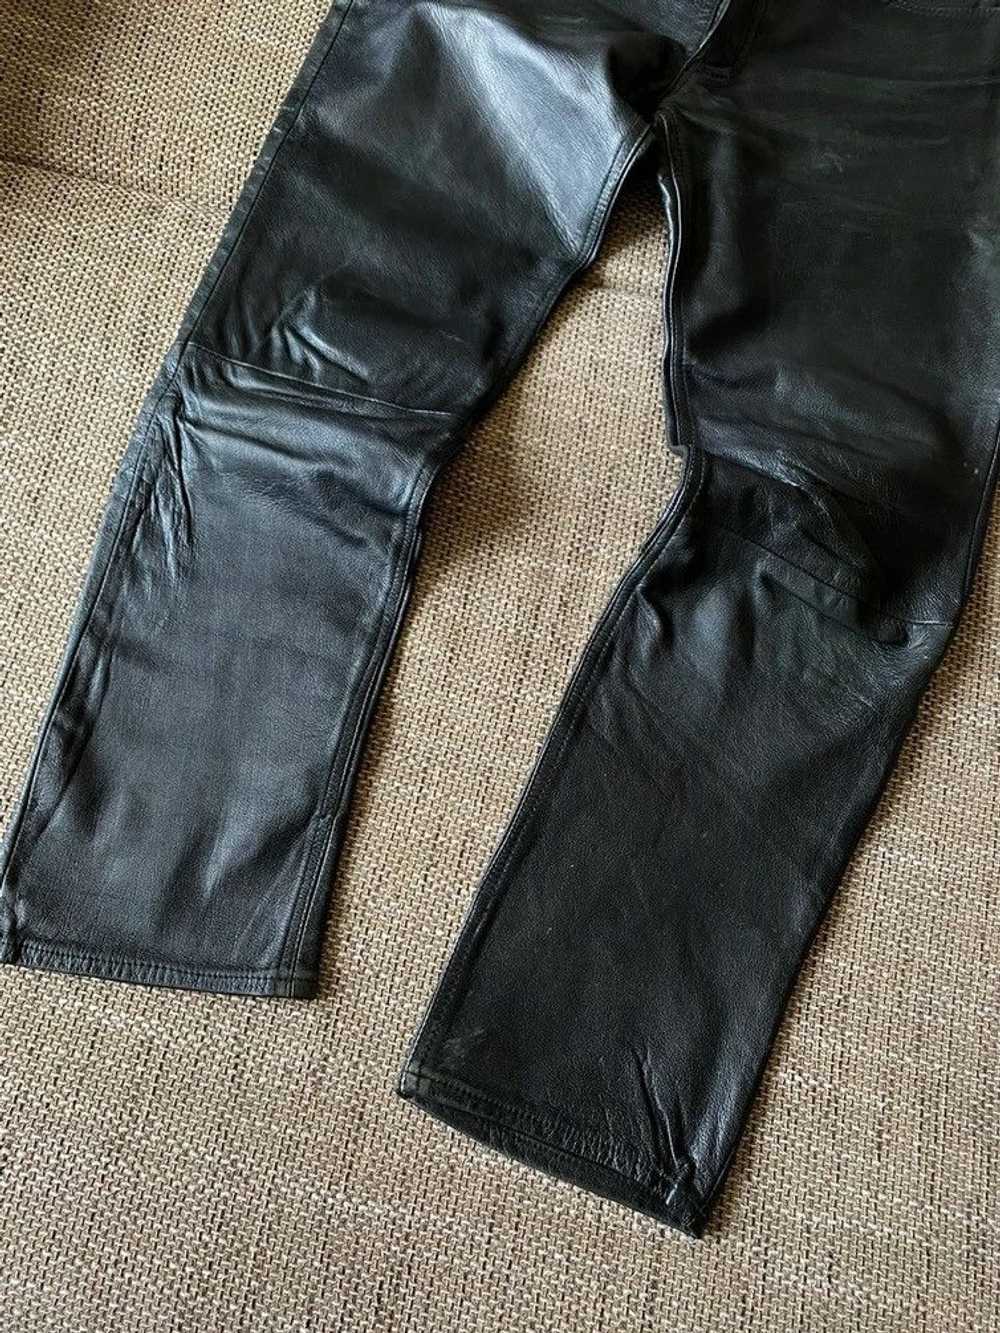 Genuine Leather × Leather × Vintage Vintage leath… - image 3